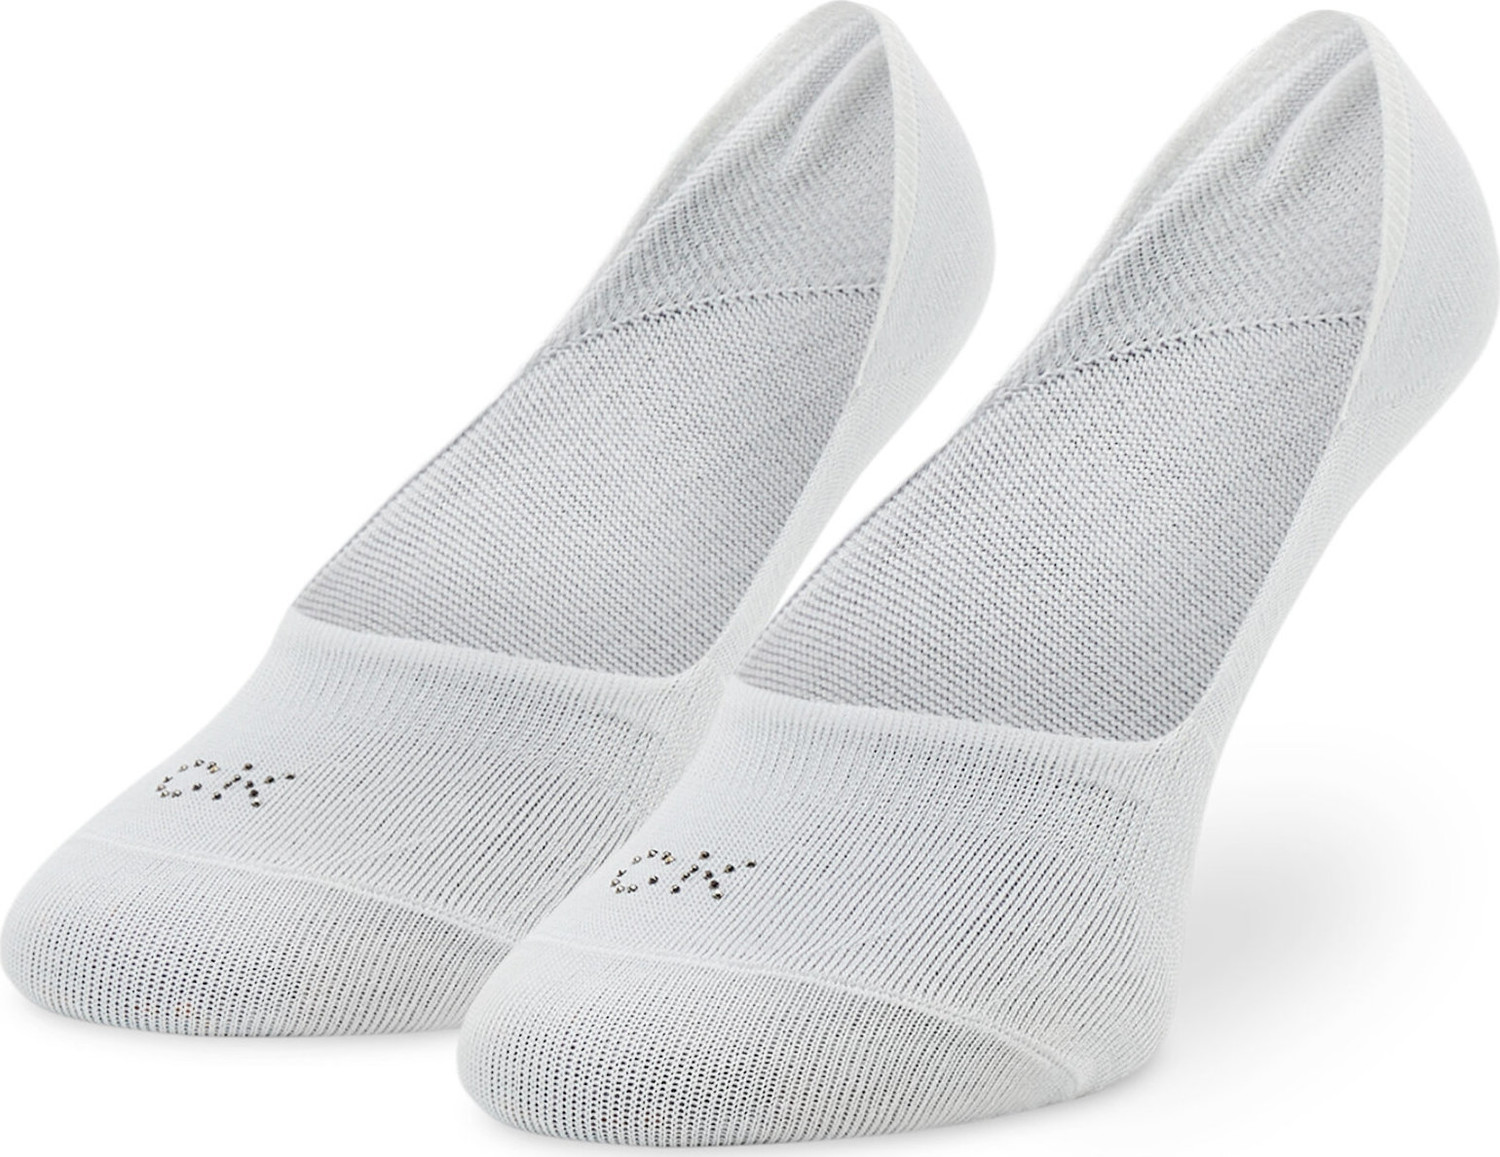 Dámské kotníkové ponožky Calvin Klein 701218780 White